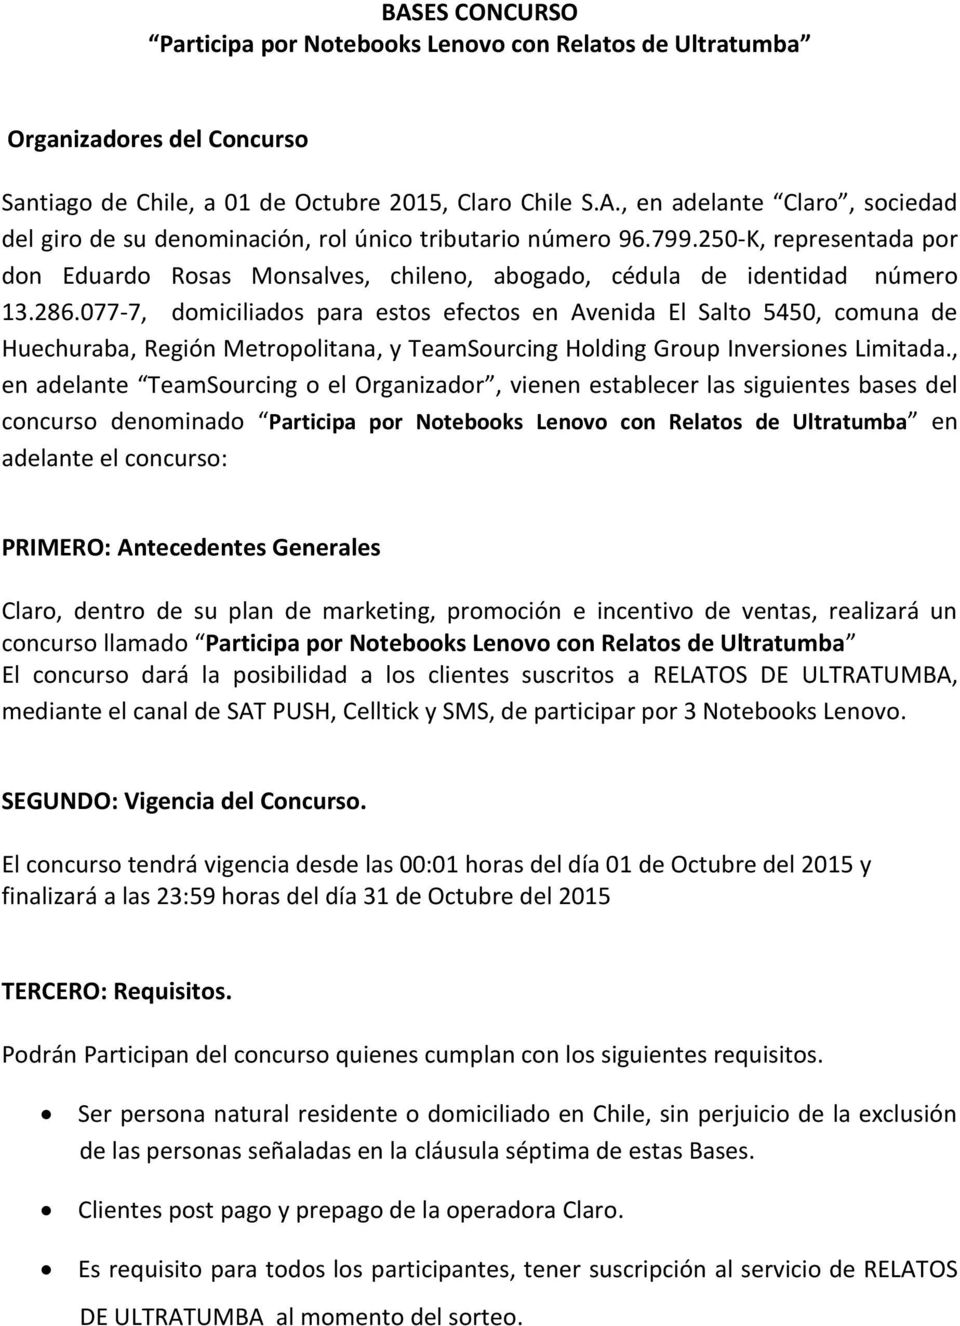 077-7, domiciliados para estos efectos en Avenida El Salto 5450, comuna de Huechuraba, Región Metropolitana, y TeamSourcing Holding Group Inversiones Limitada.